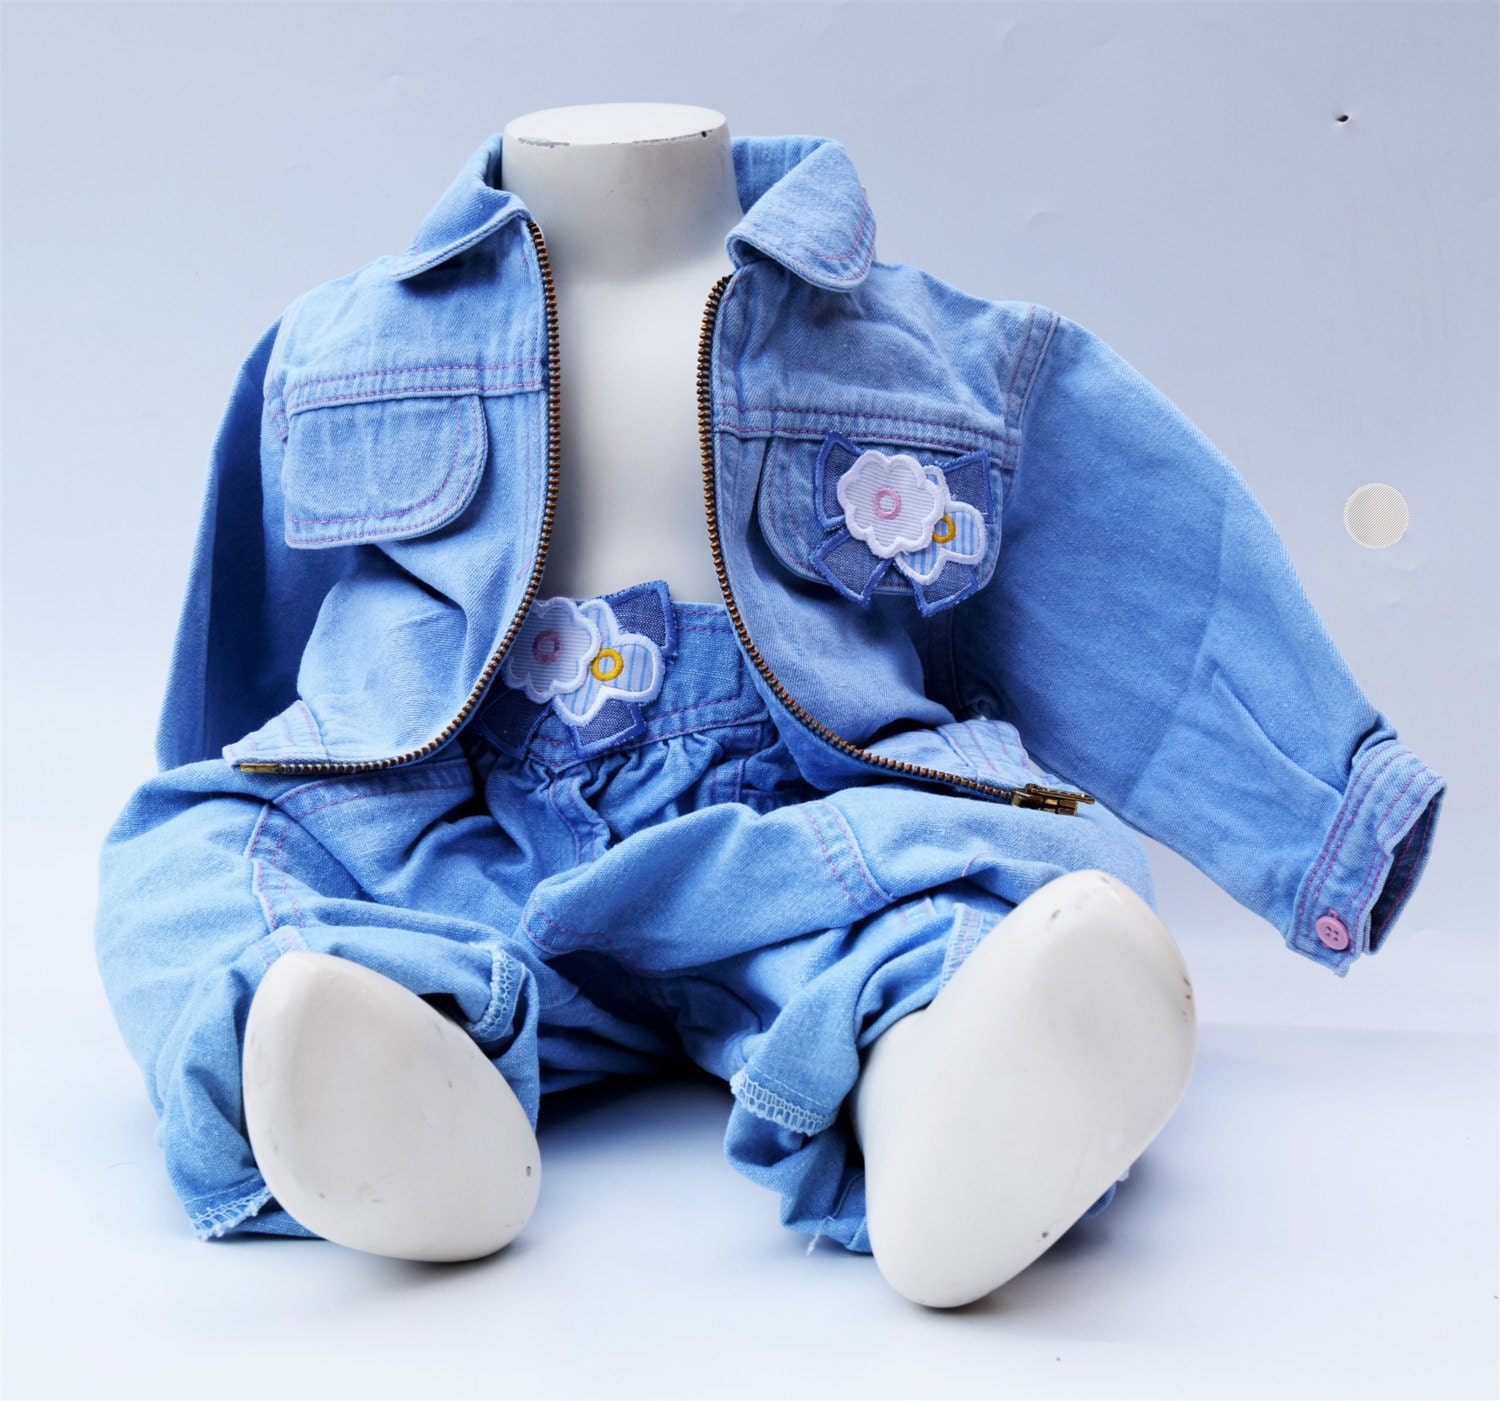 One of a kind designer denim infant jeans Kleding Unisex kinderkleding Unisex babykleding Broek 